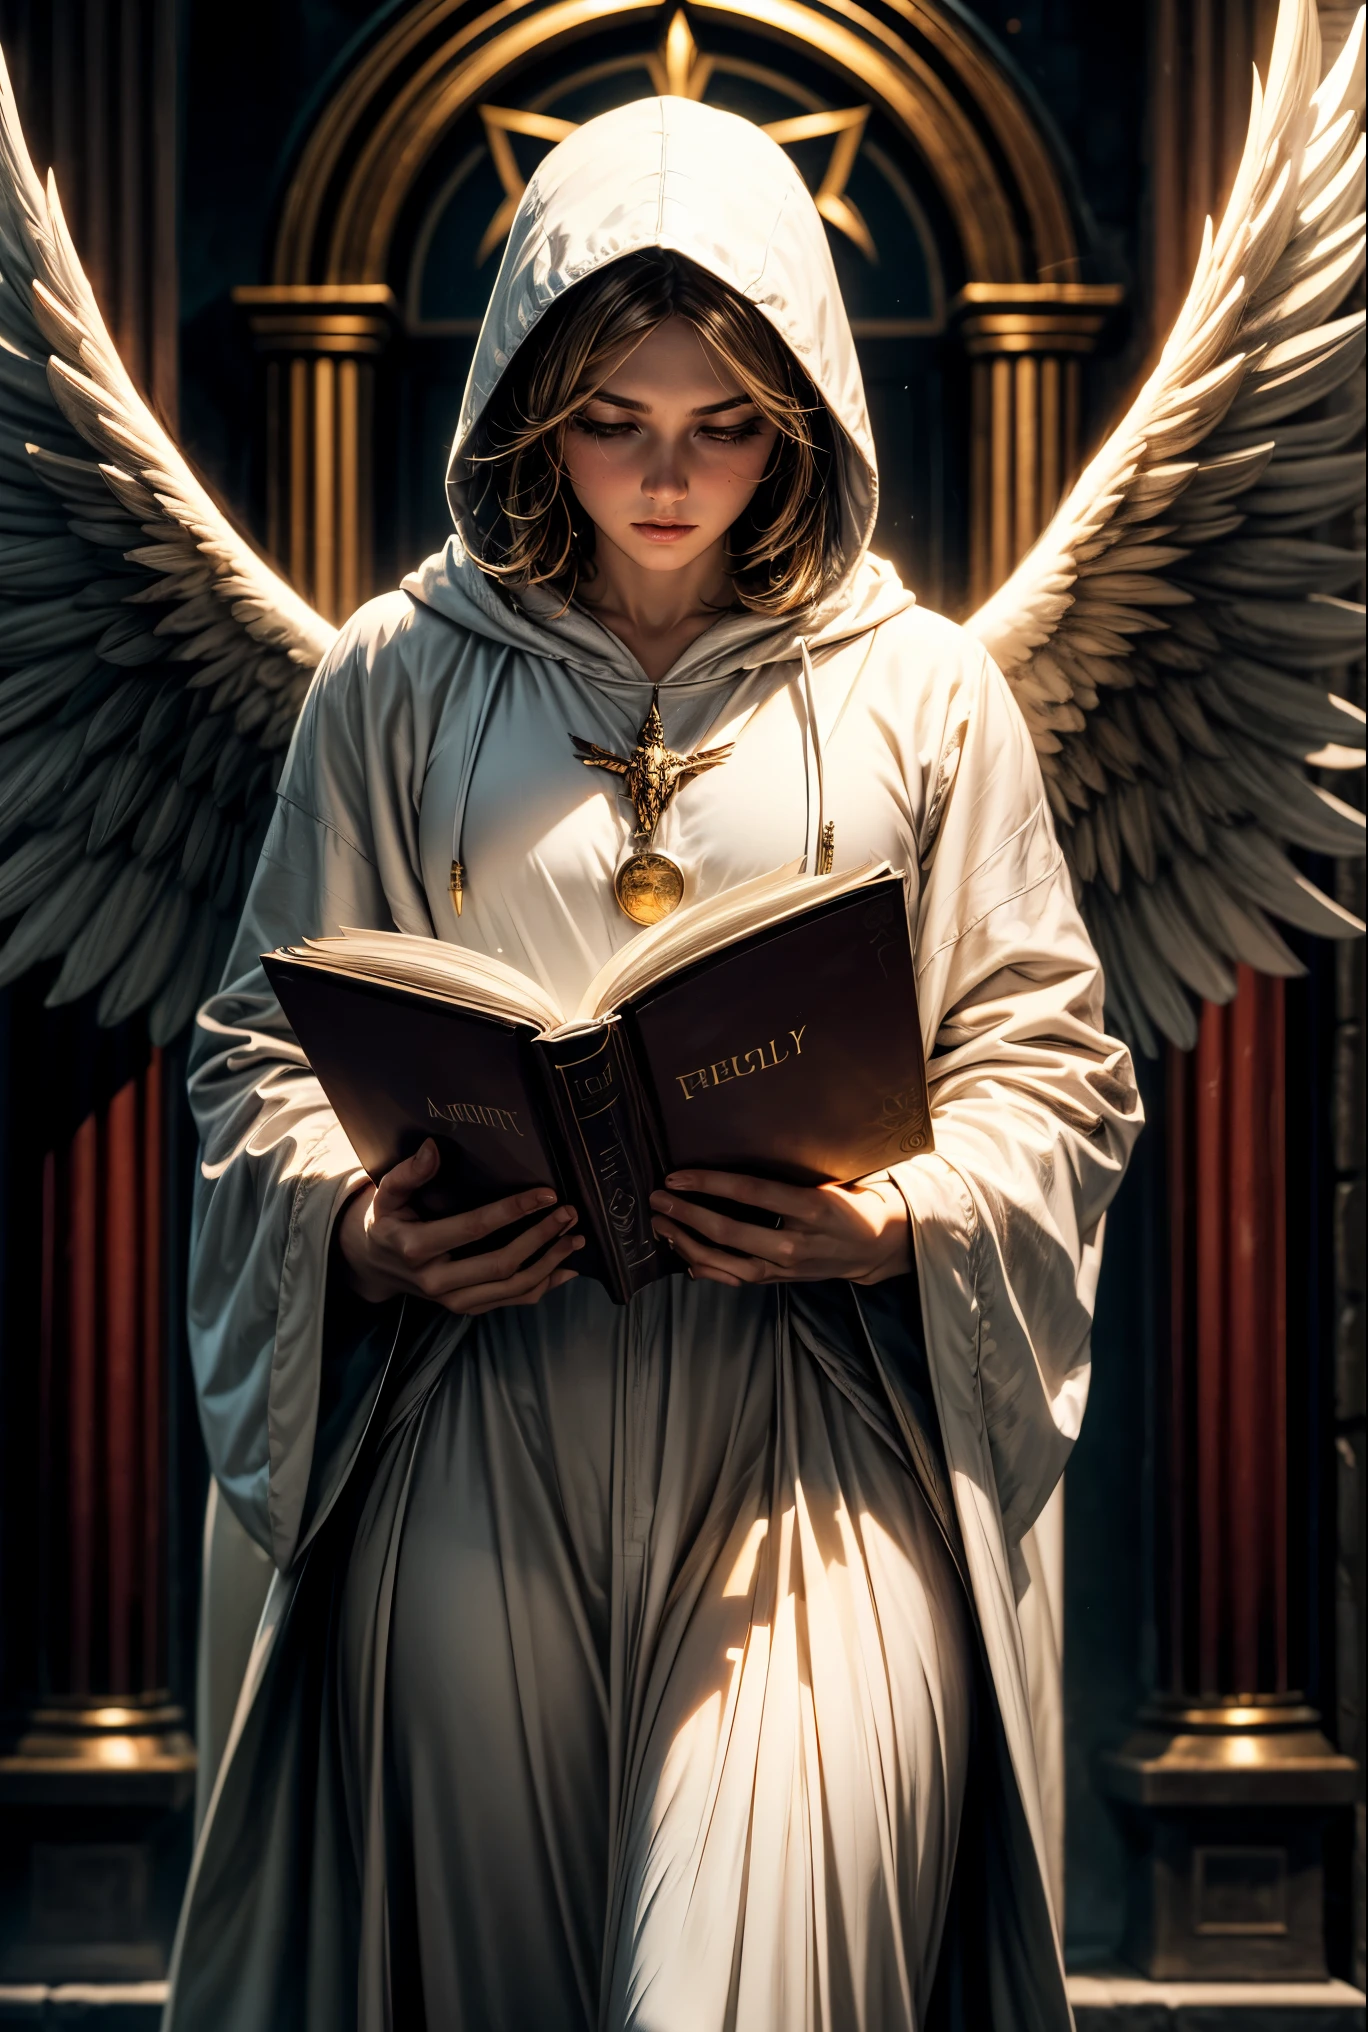 神秘的, フード付き天使, 戦闘大天使, 天使の白いローブ, ヒイラギライト, 本を持っている, エネルギー